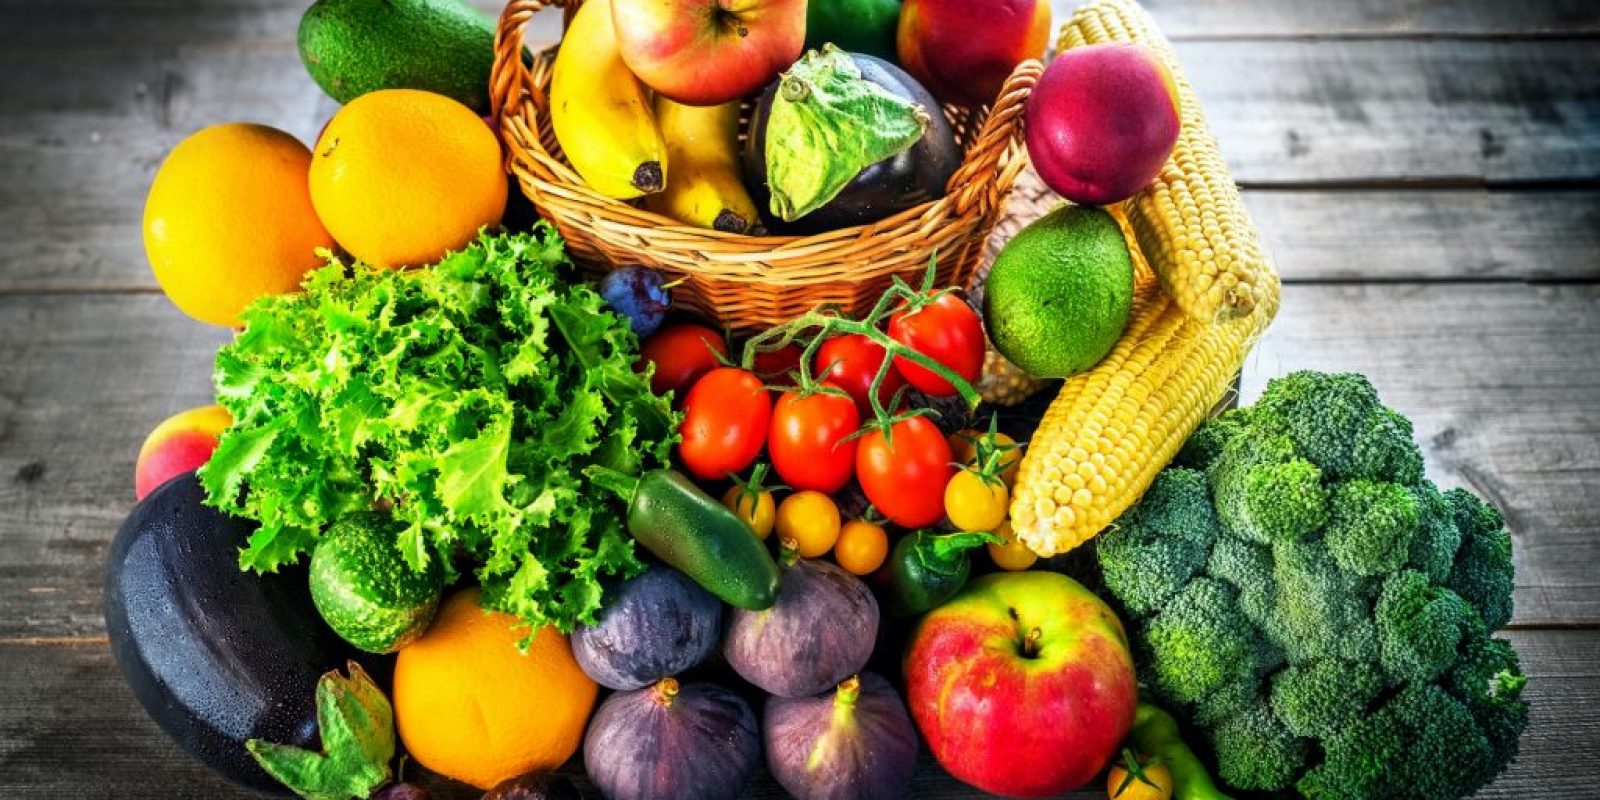 Obst und Gemüse unverpackt kaufen